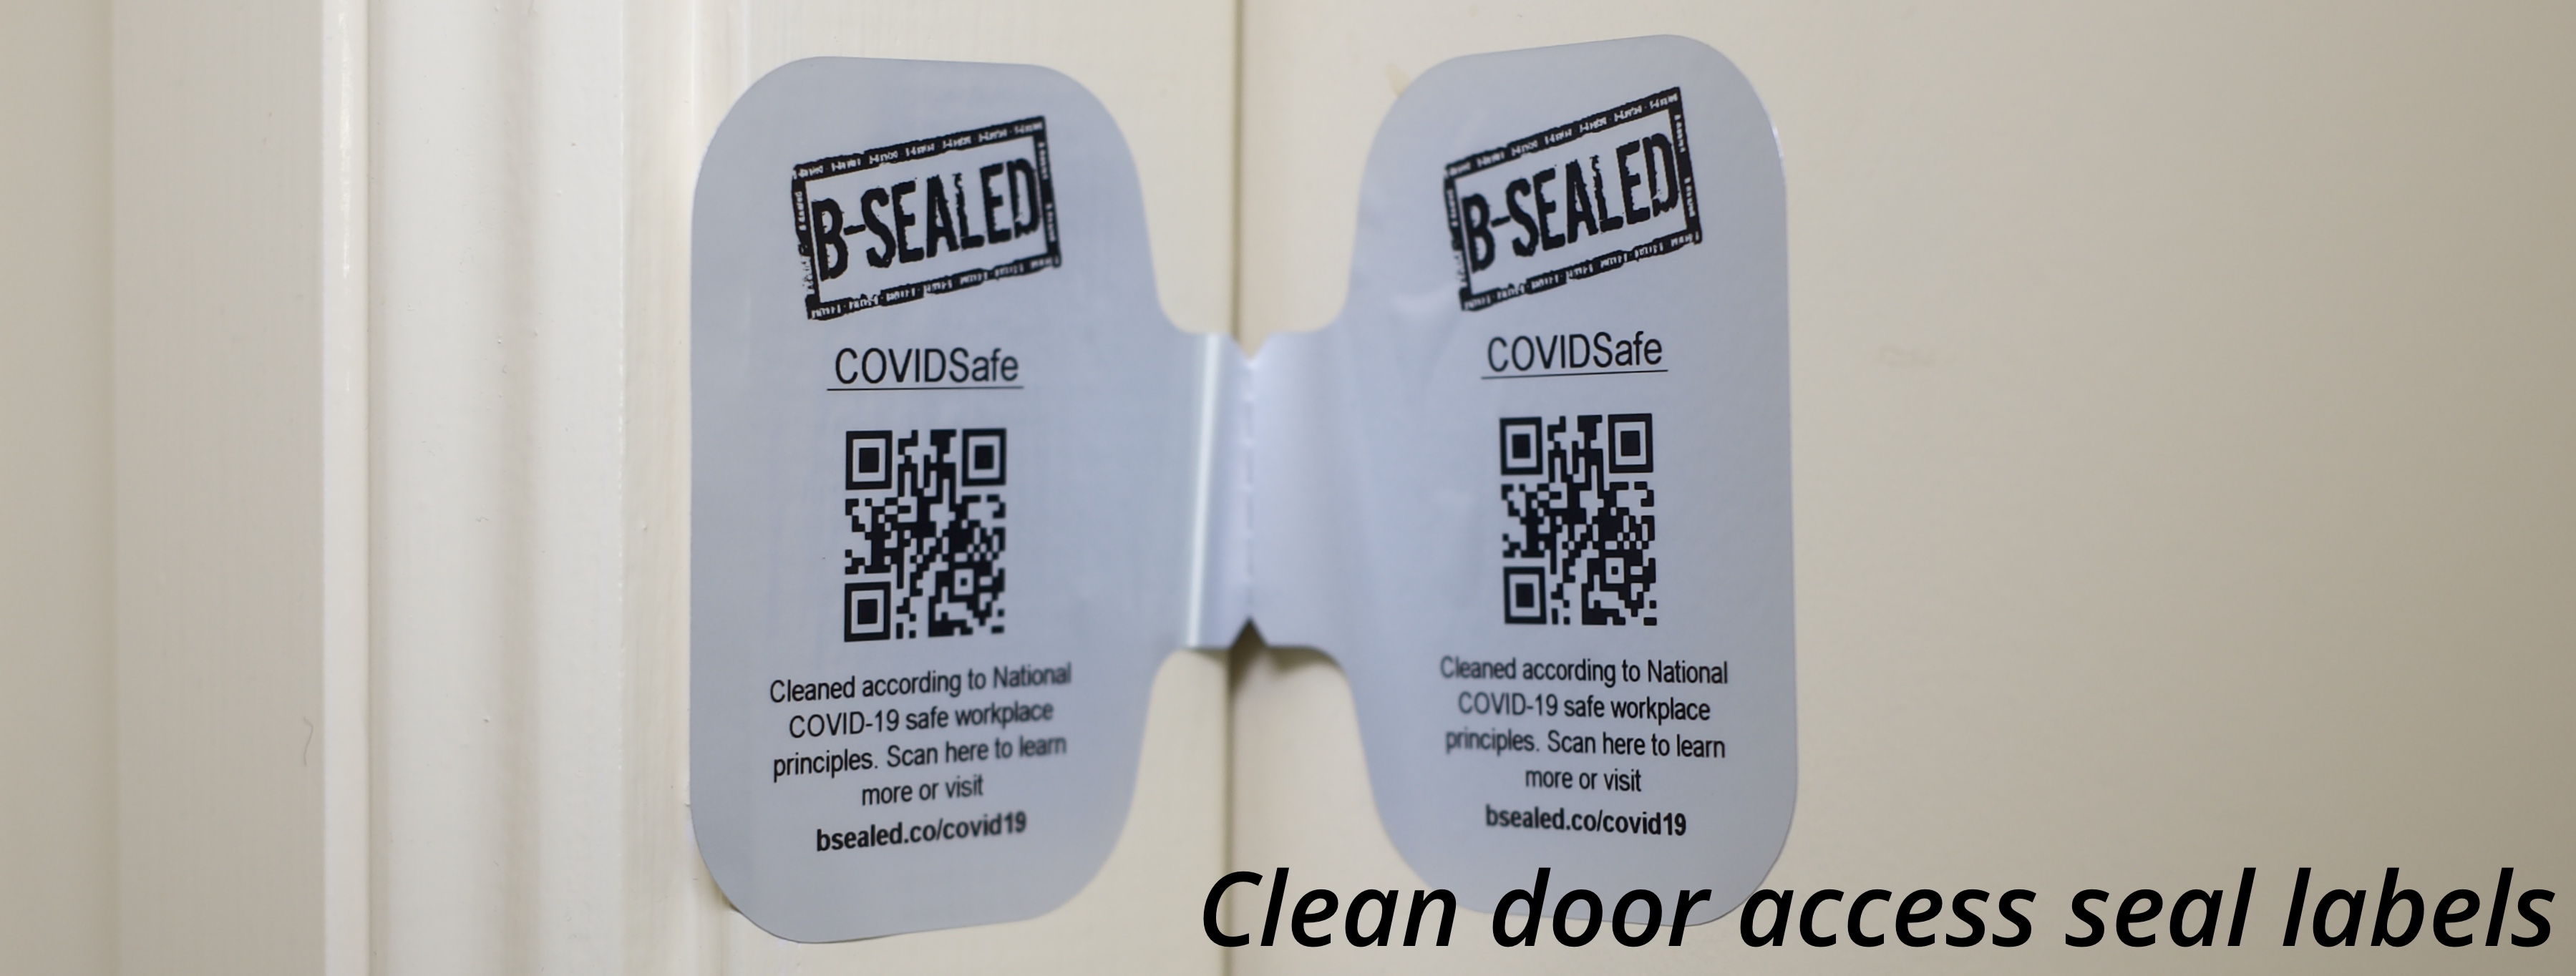 Clean door seals & void labels - Reinforce your customer confidence with a clean door seal label